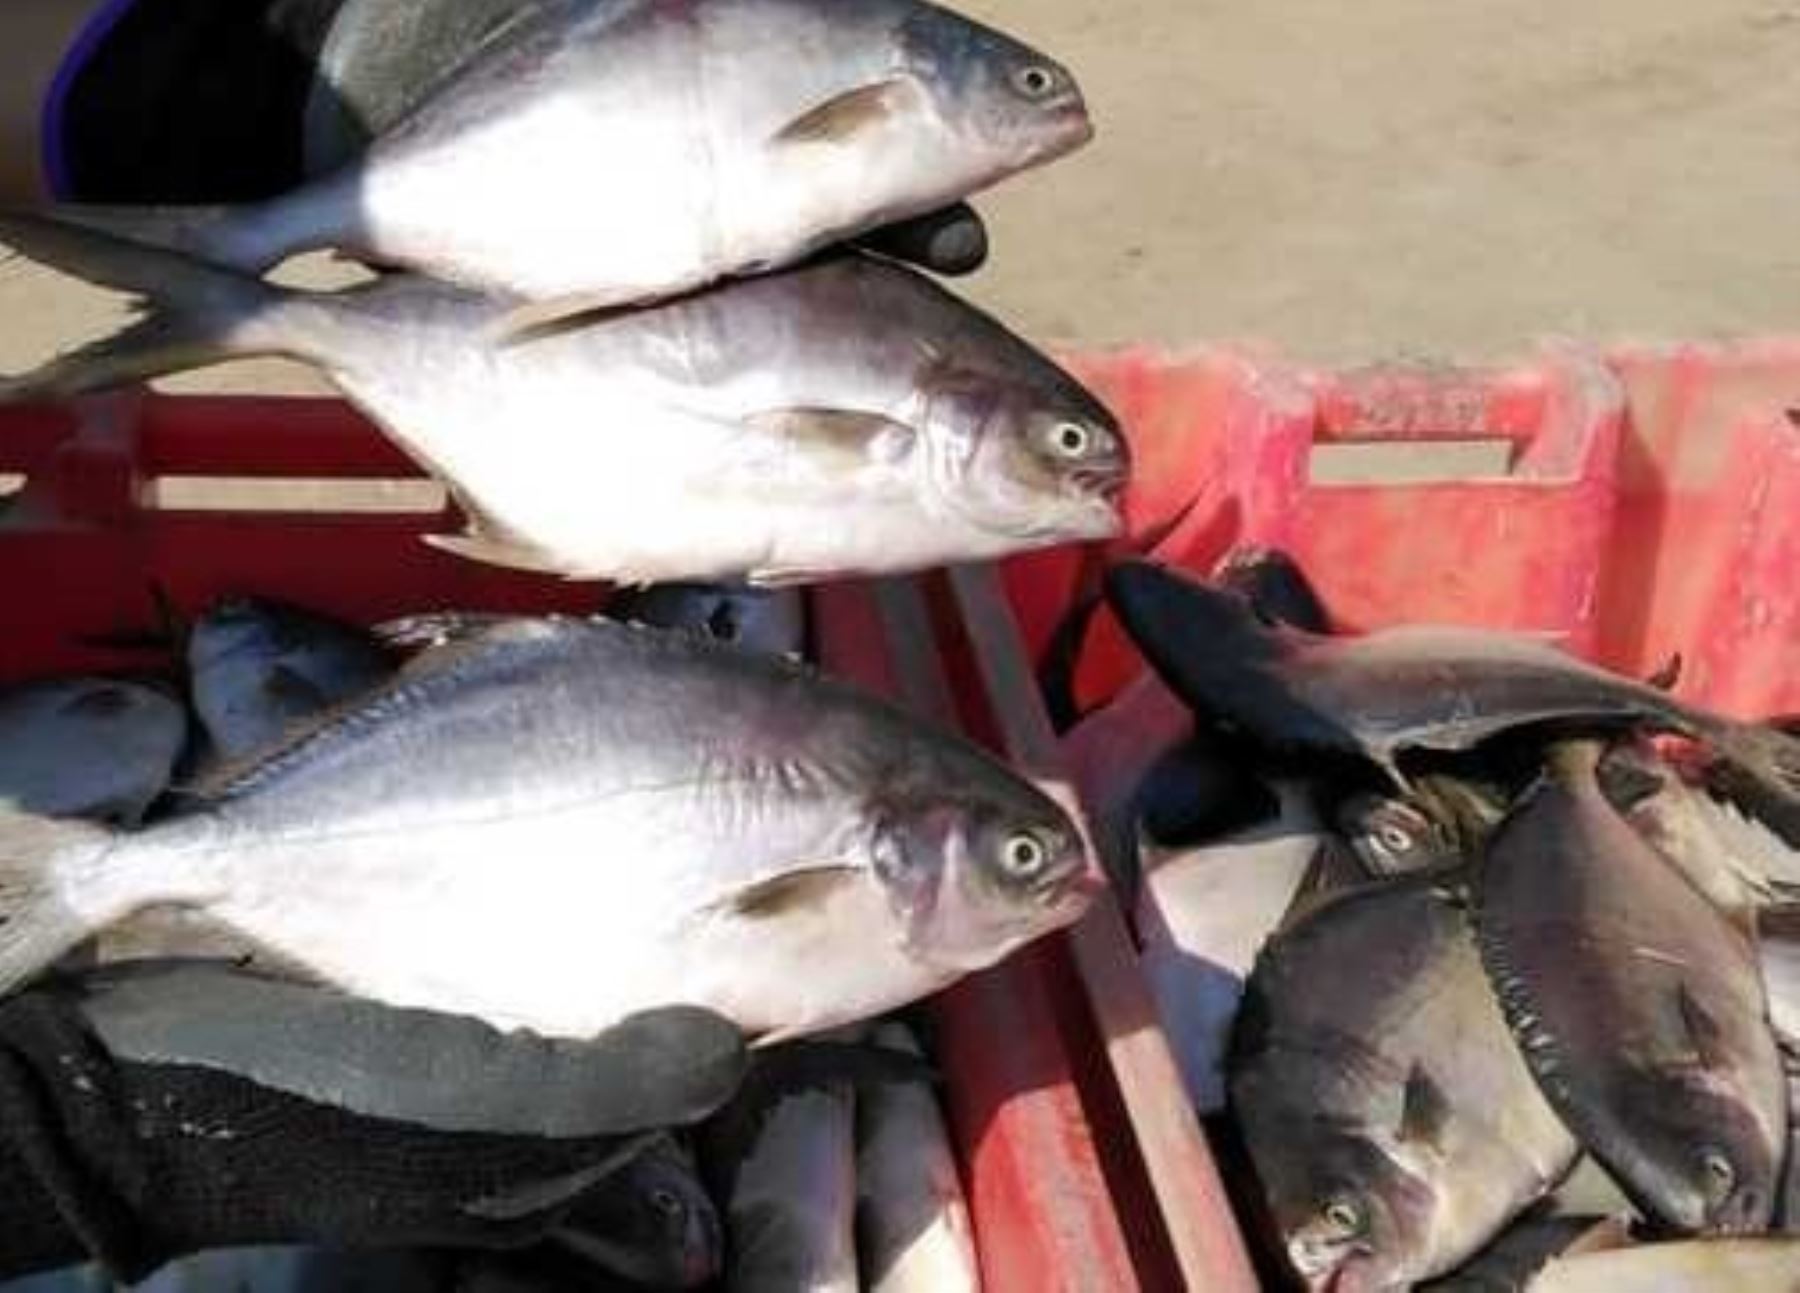 El Ministerio de la Producción (Produce) decomisó 300 kilogramos de pescado "Pampanito", extraído ilegalmente frente a la Costa Verde en el distrito de Miraflores.